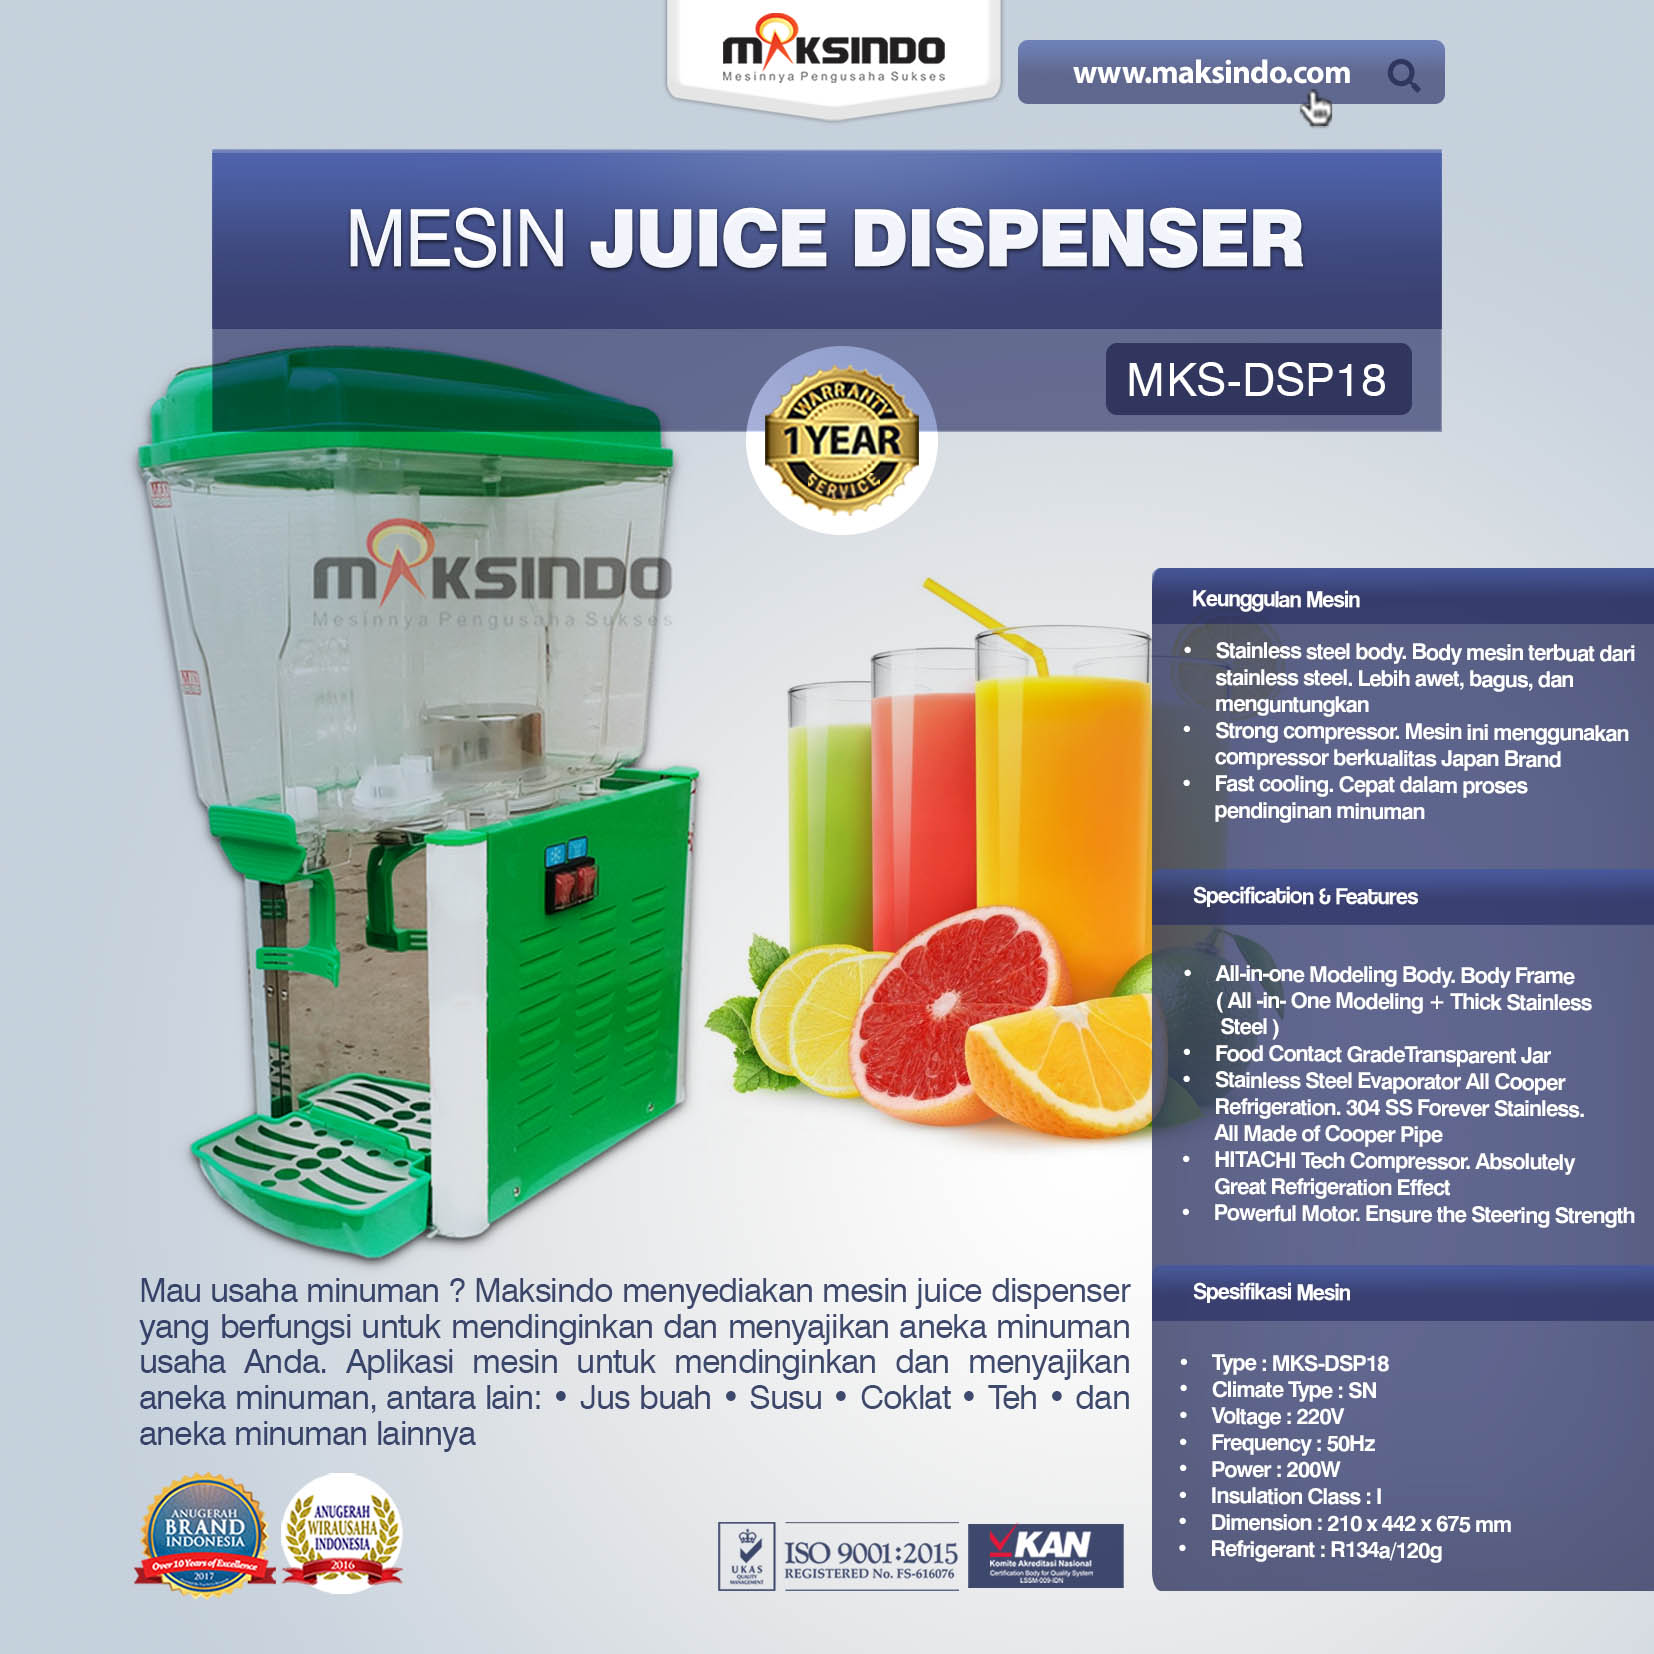 Jual Mesin Juice Dispenser MKS-DSP18 di Bekasi